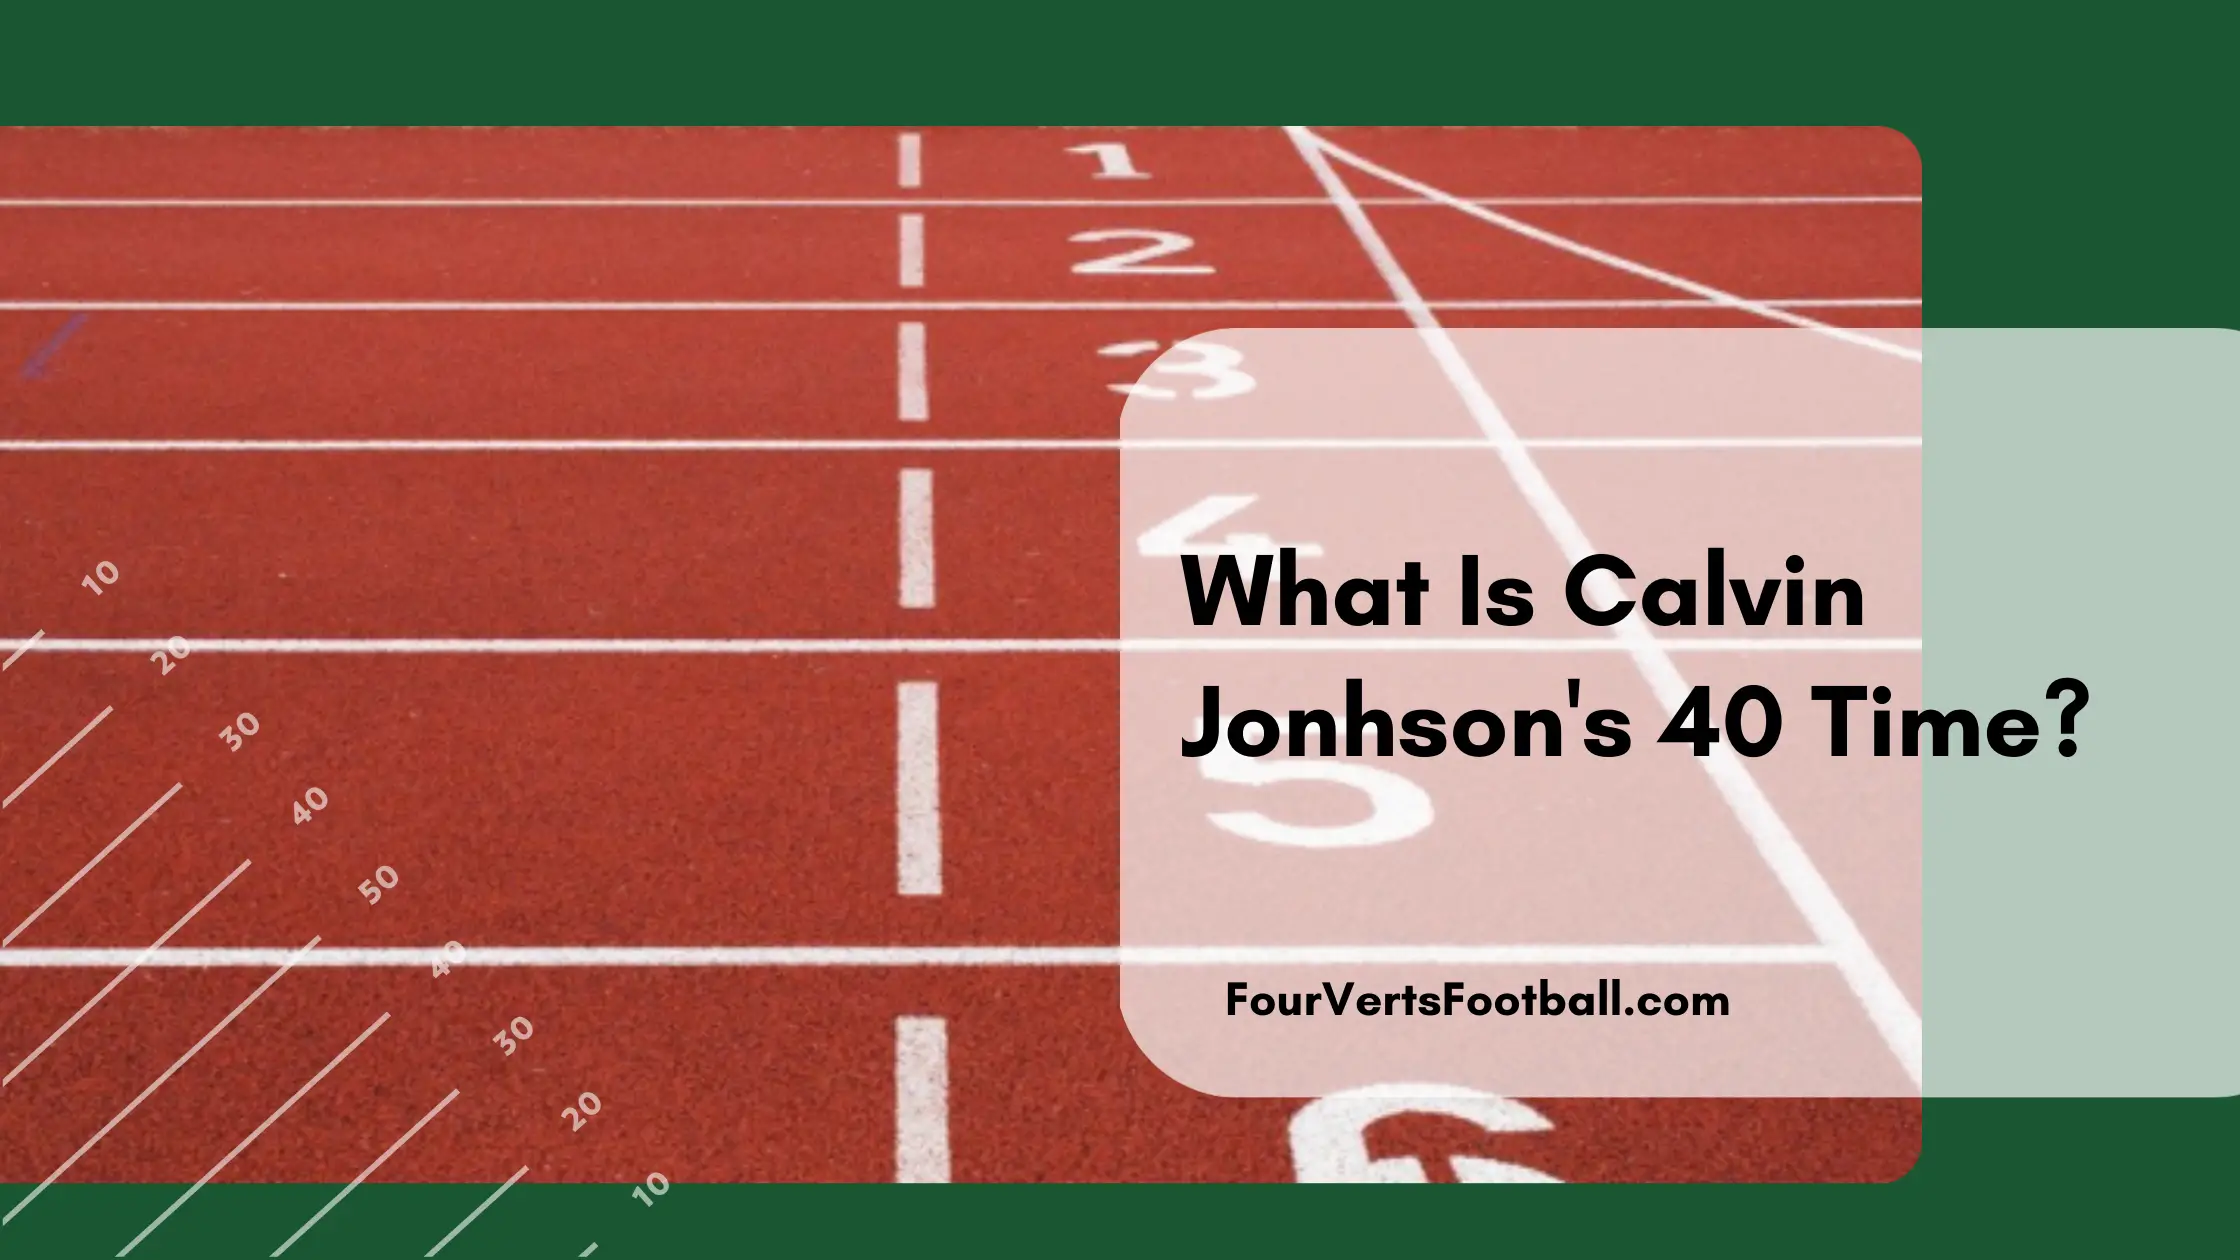 Calvin Johnson's 40 time